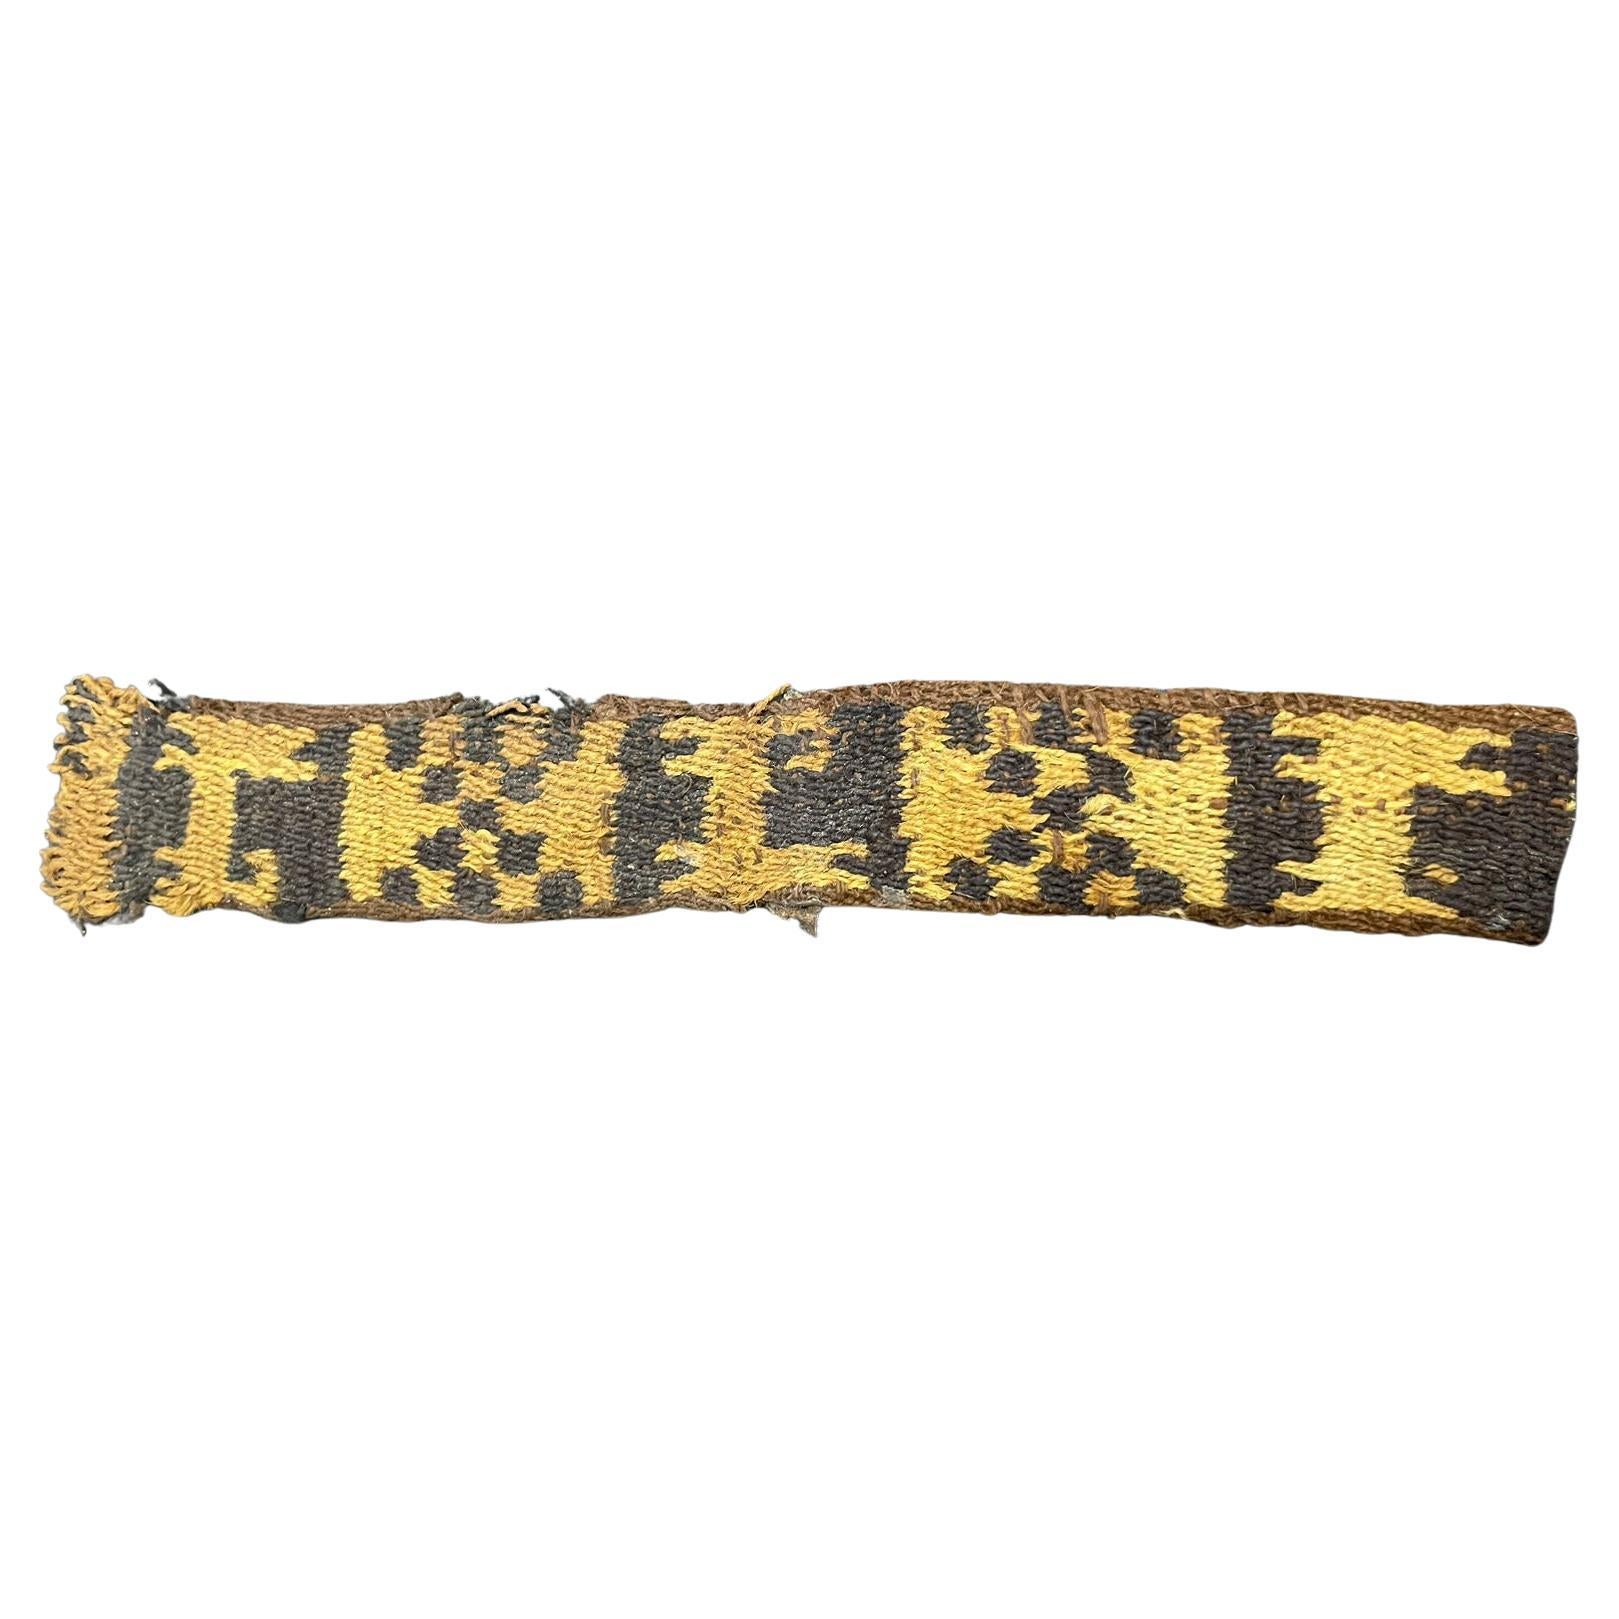  Précolombien  Fragment de textile Inka au Pérou, ex Ferdinand Anton